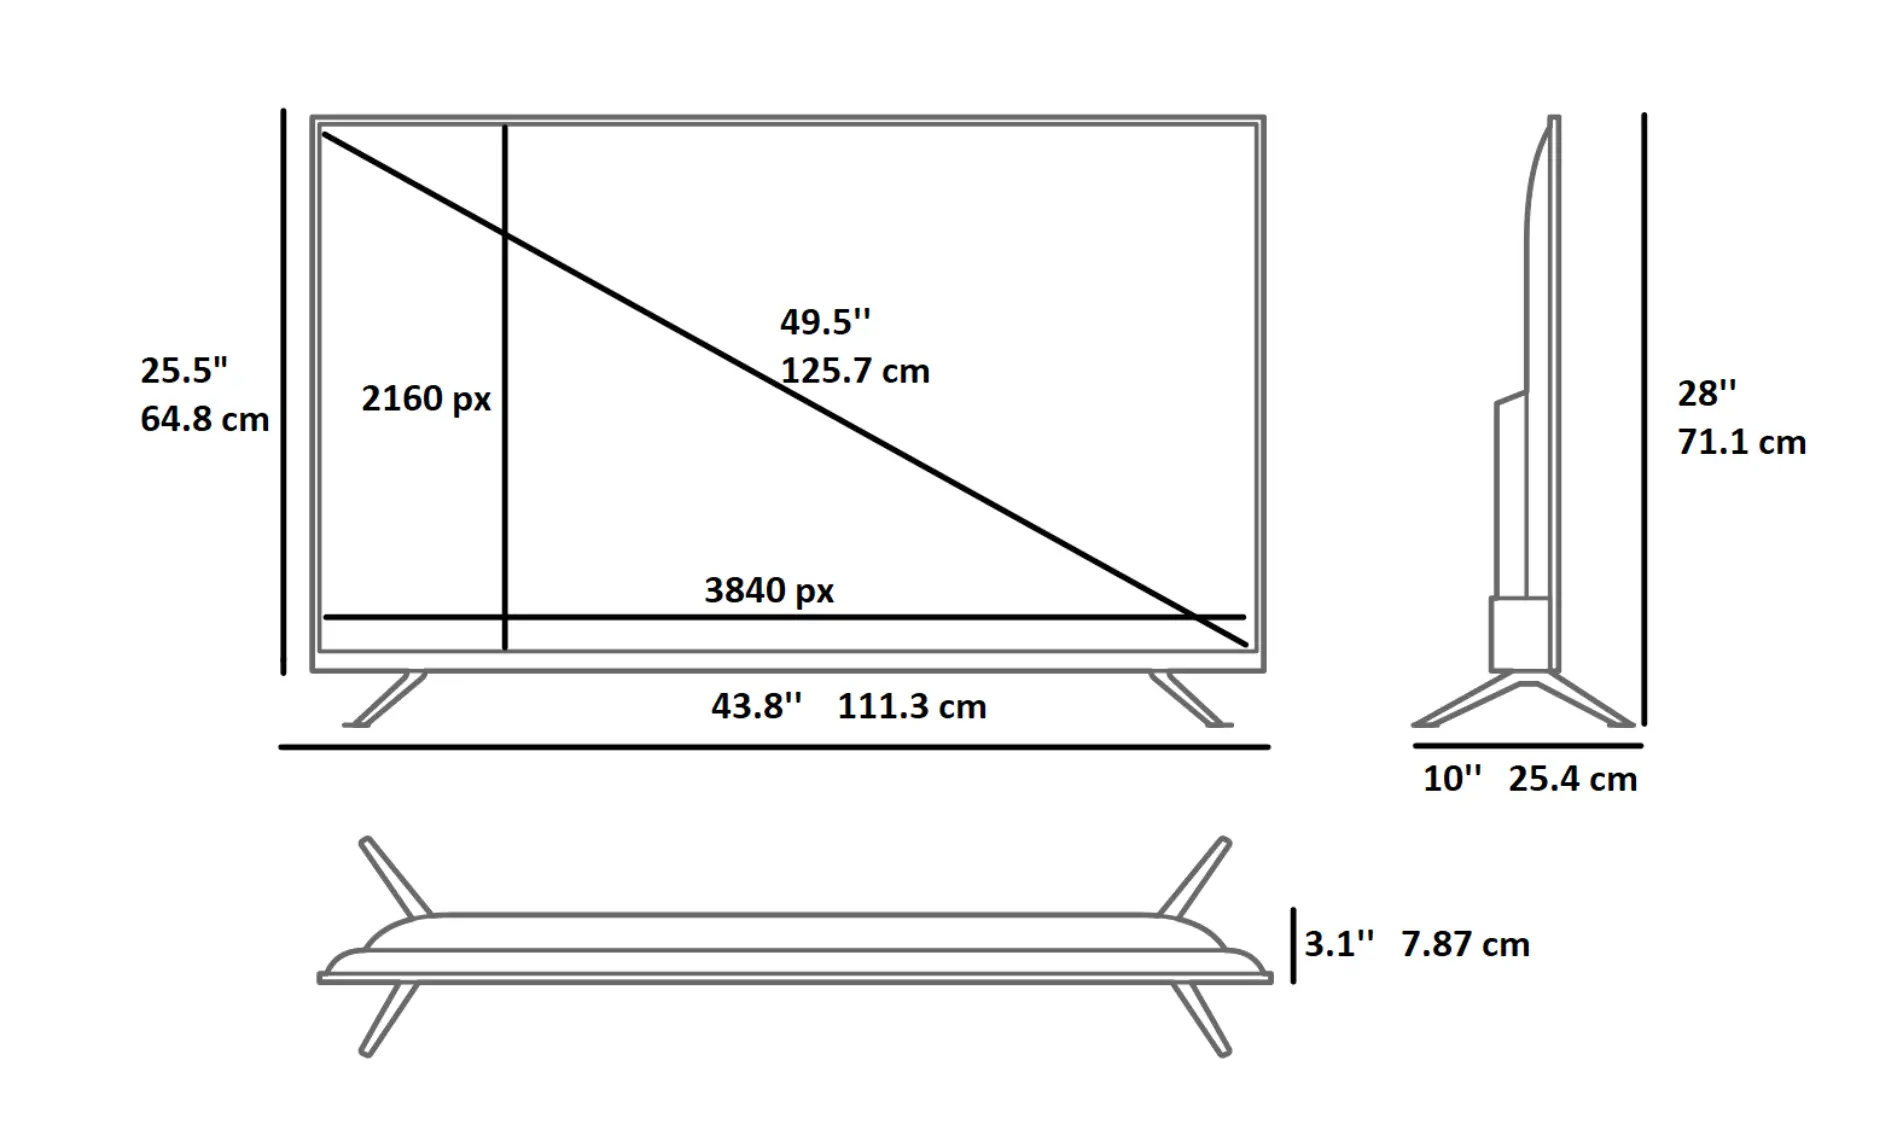 50 inch TV dimensions come